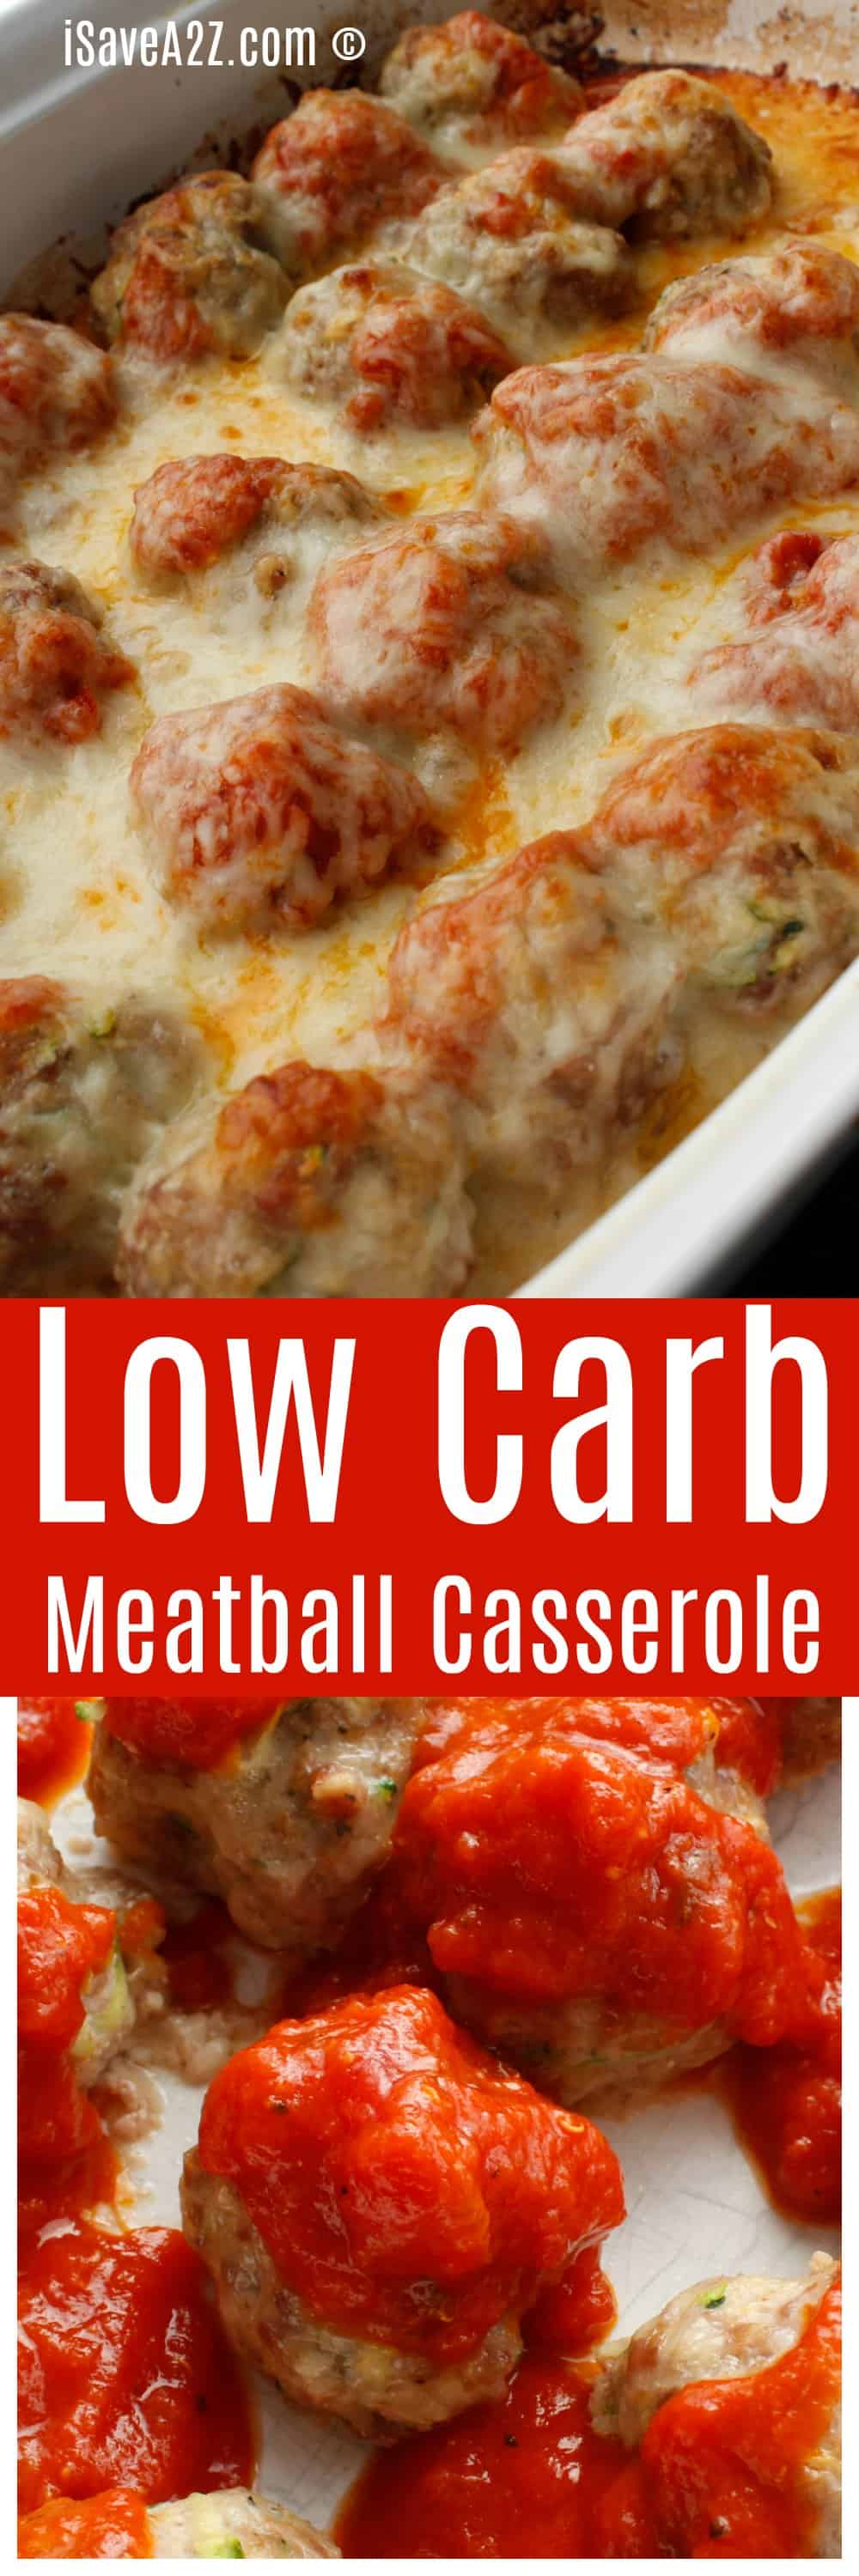 Low Carb Meatball Casserole Recipe